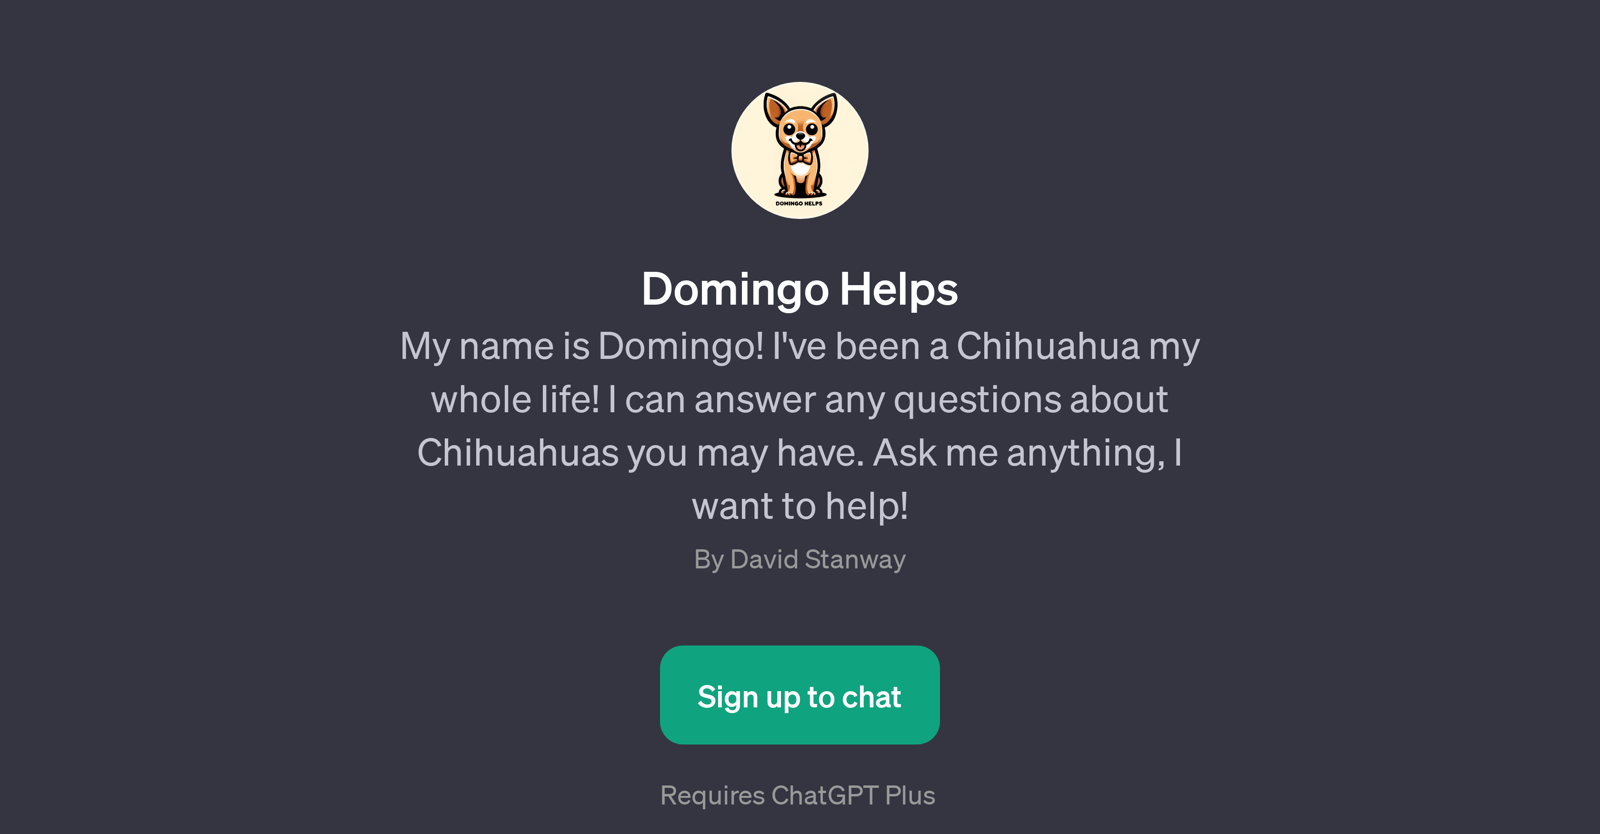 Domingo Helps website